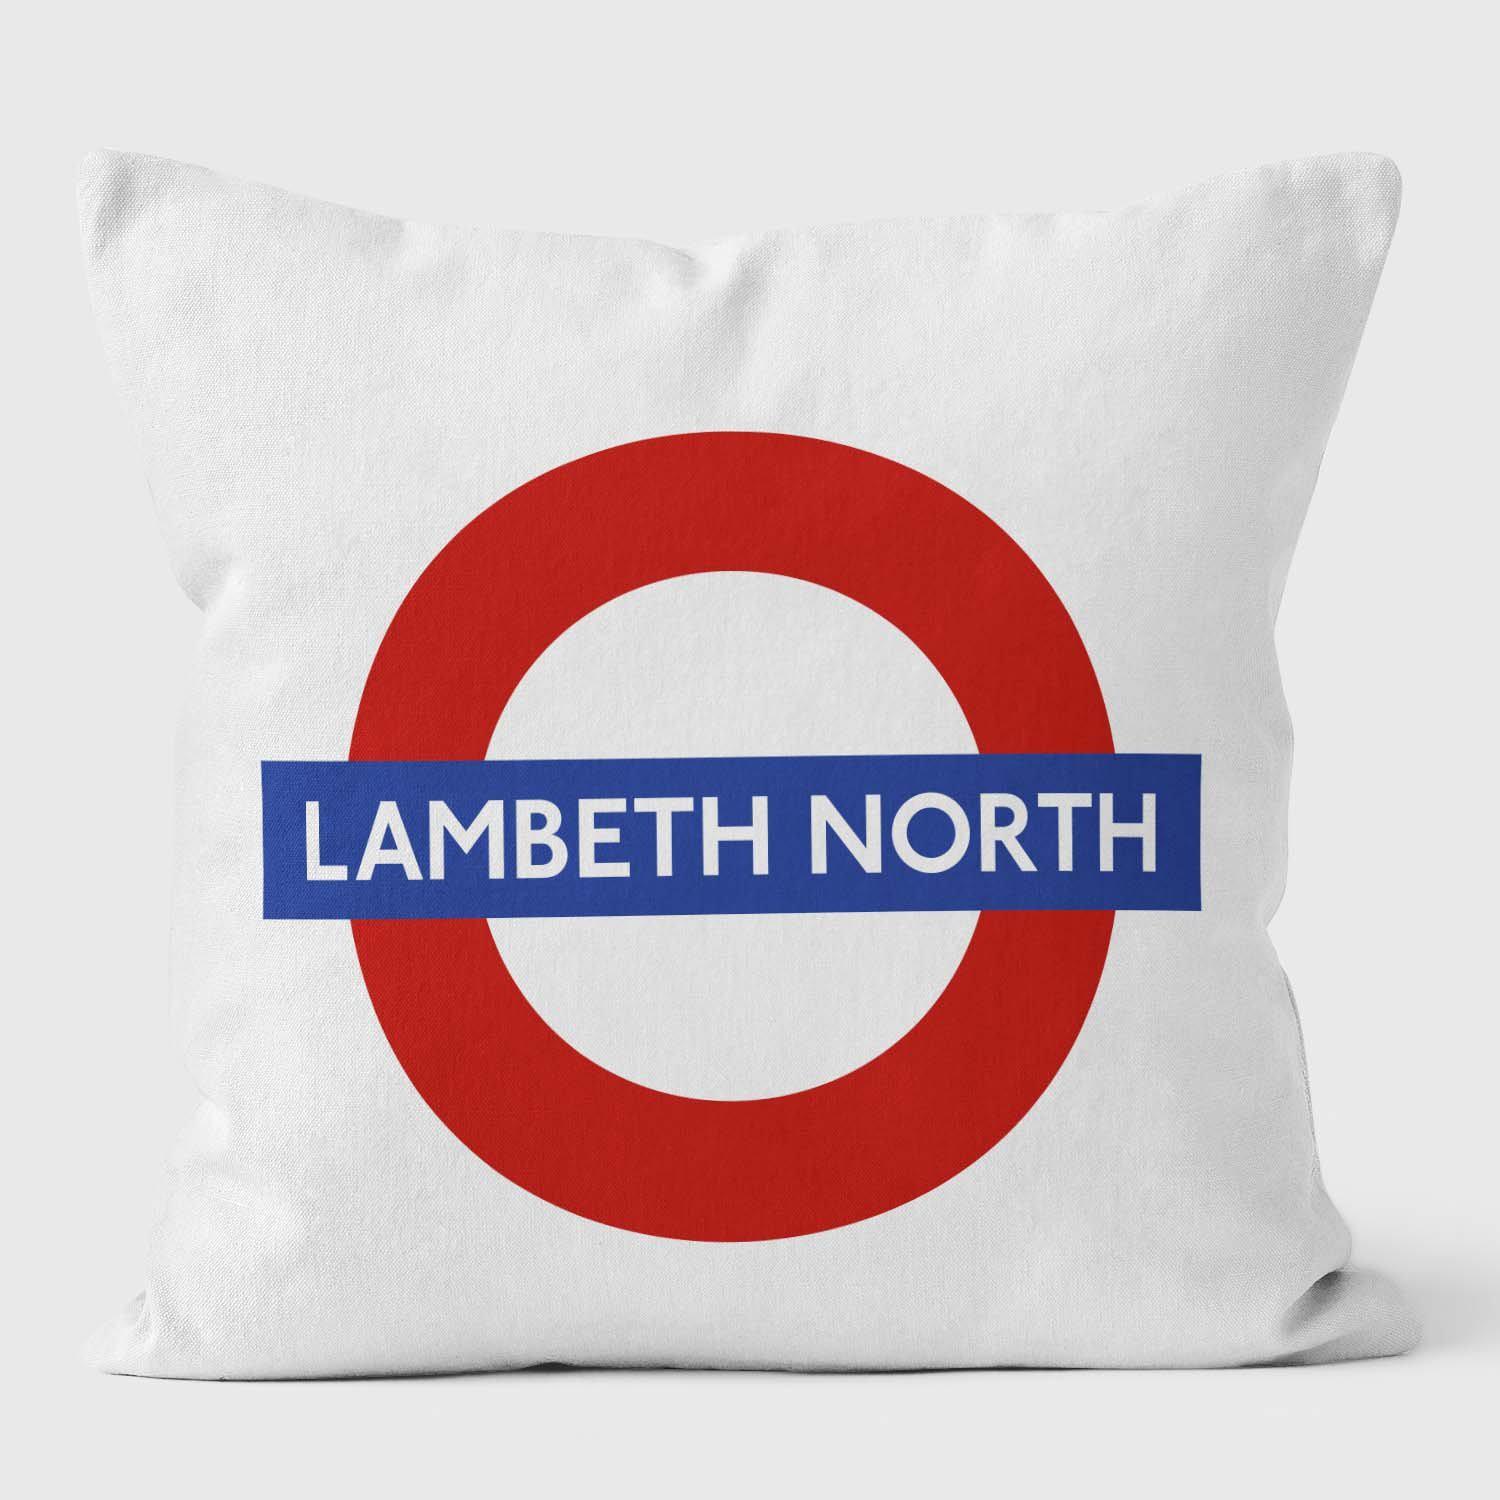 Lambeth North London Underground Tube Station Roundel Cushion - Handmade Cushions UK - WeLoveCushions